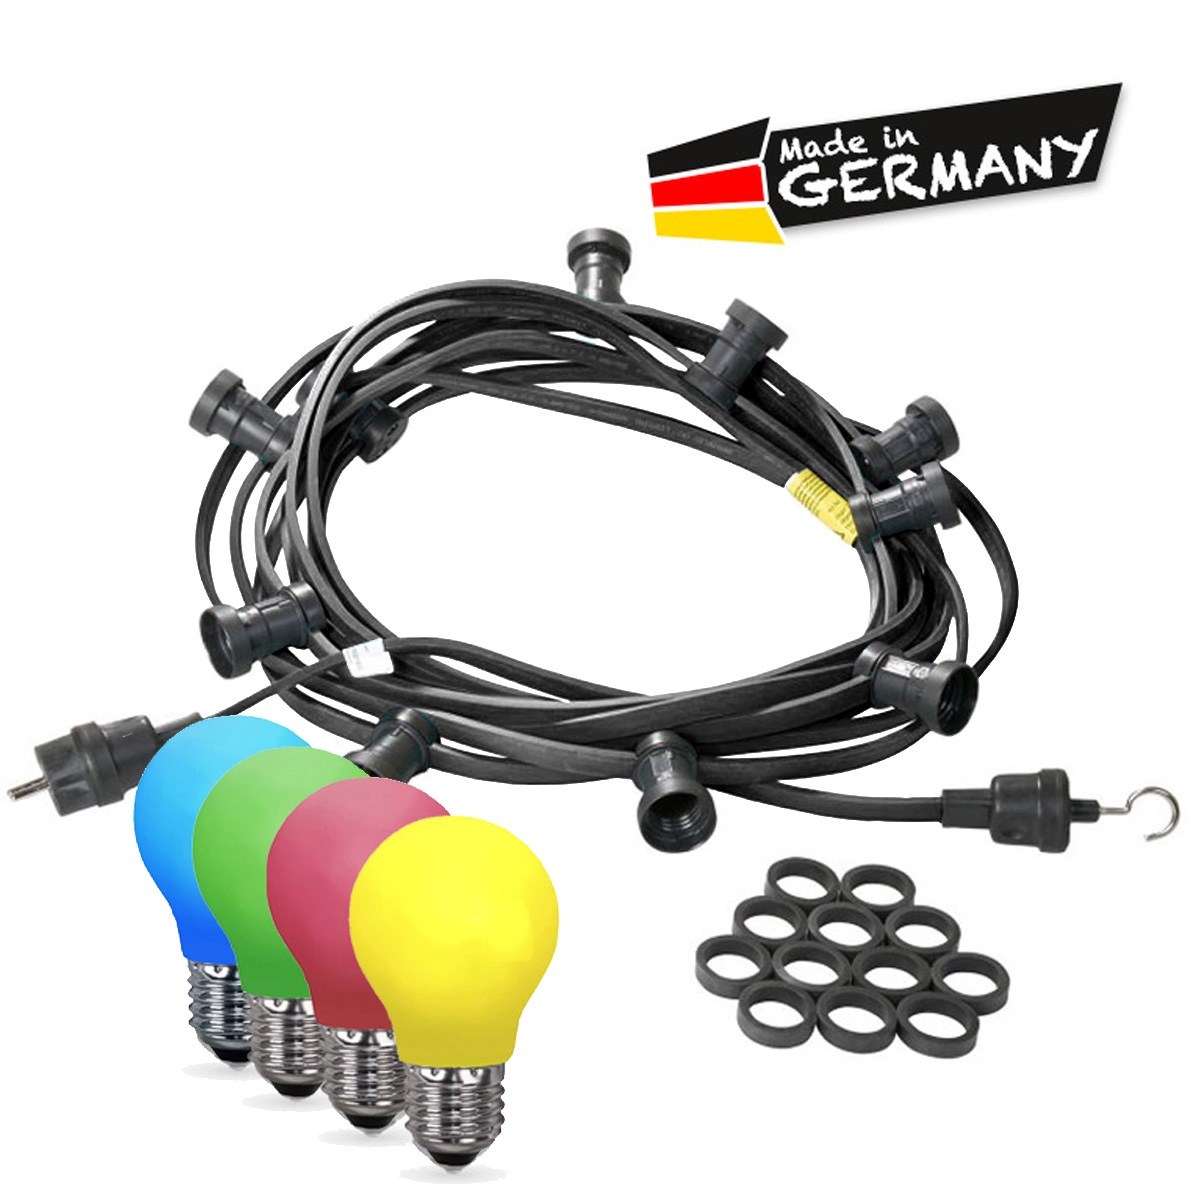 Illu-/Partylichterkette 20m - Außenlichterkette - Made in Germany - 20 x bunte LED Tropfenlampe